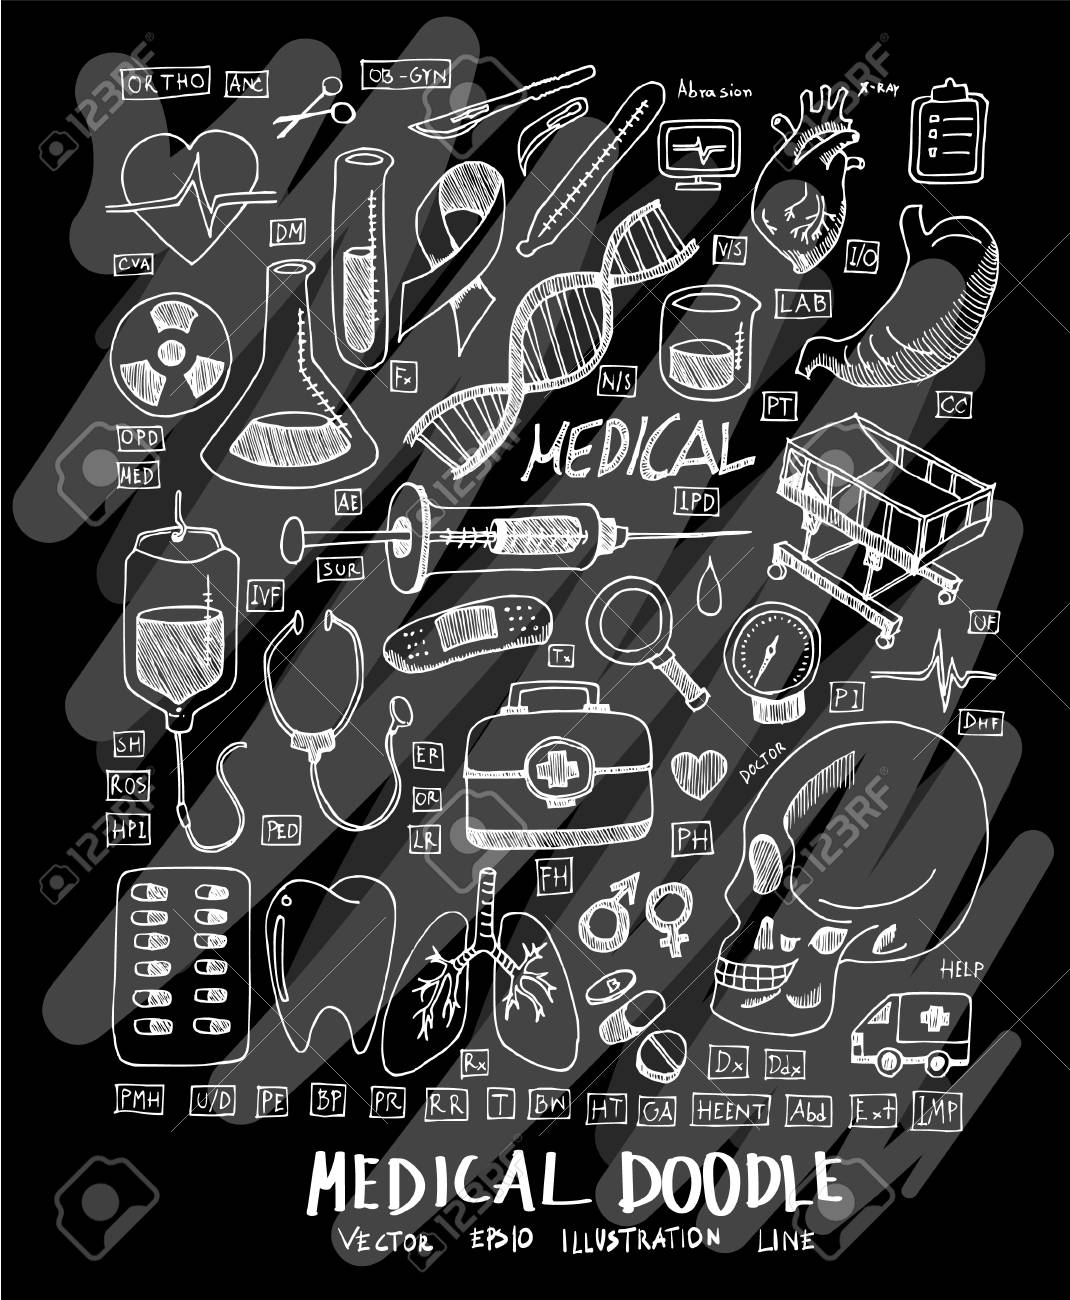 Medical Doodle Illustration Wallpaper Background Line Sketch